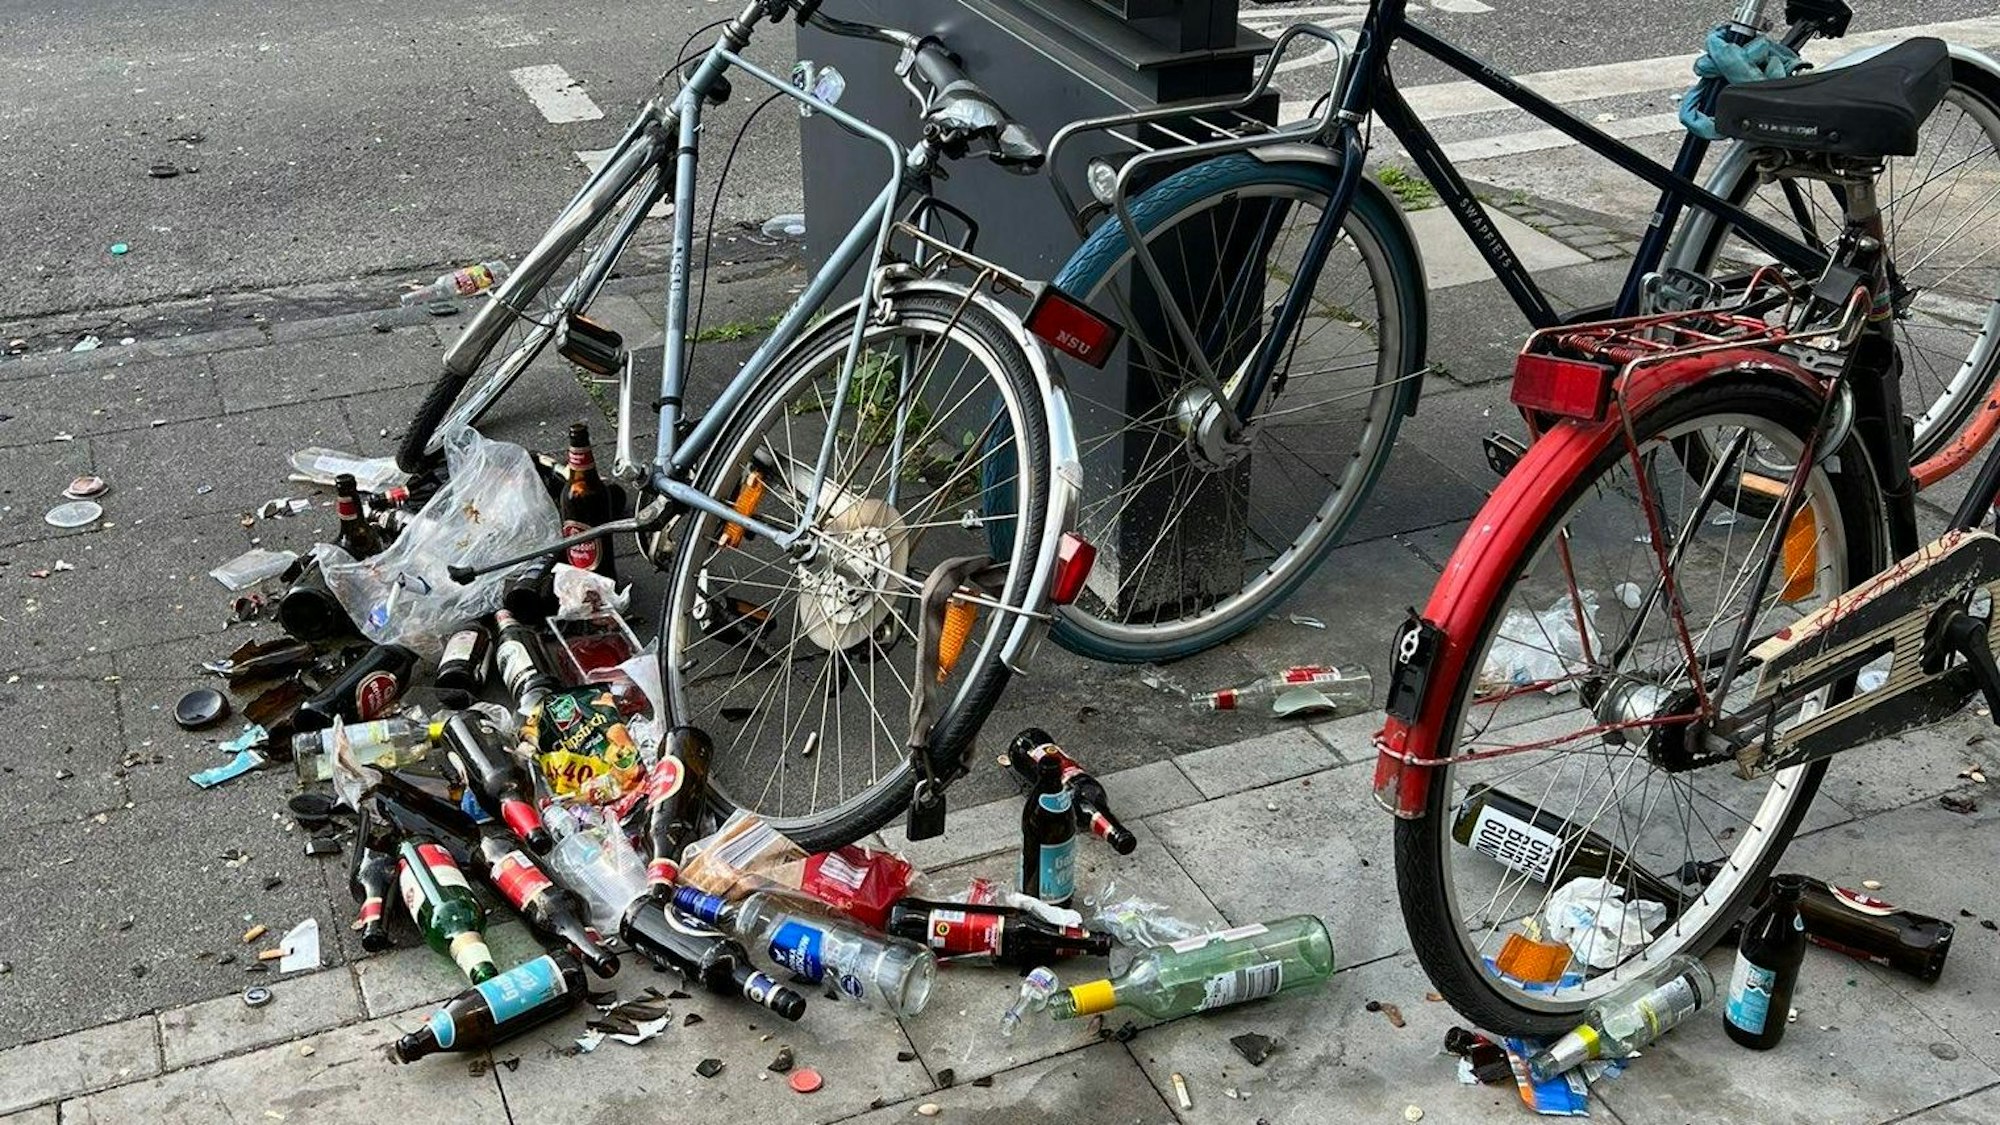 Rund um ein paar abgestellte Fahrräder liegen Dutzende umgestoßene und teilweise zerbrochene Bierflaschen.